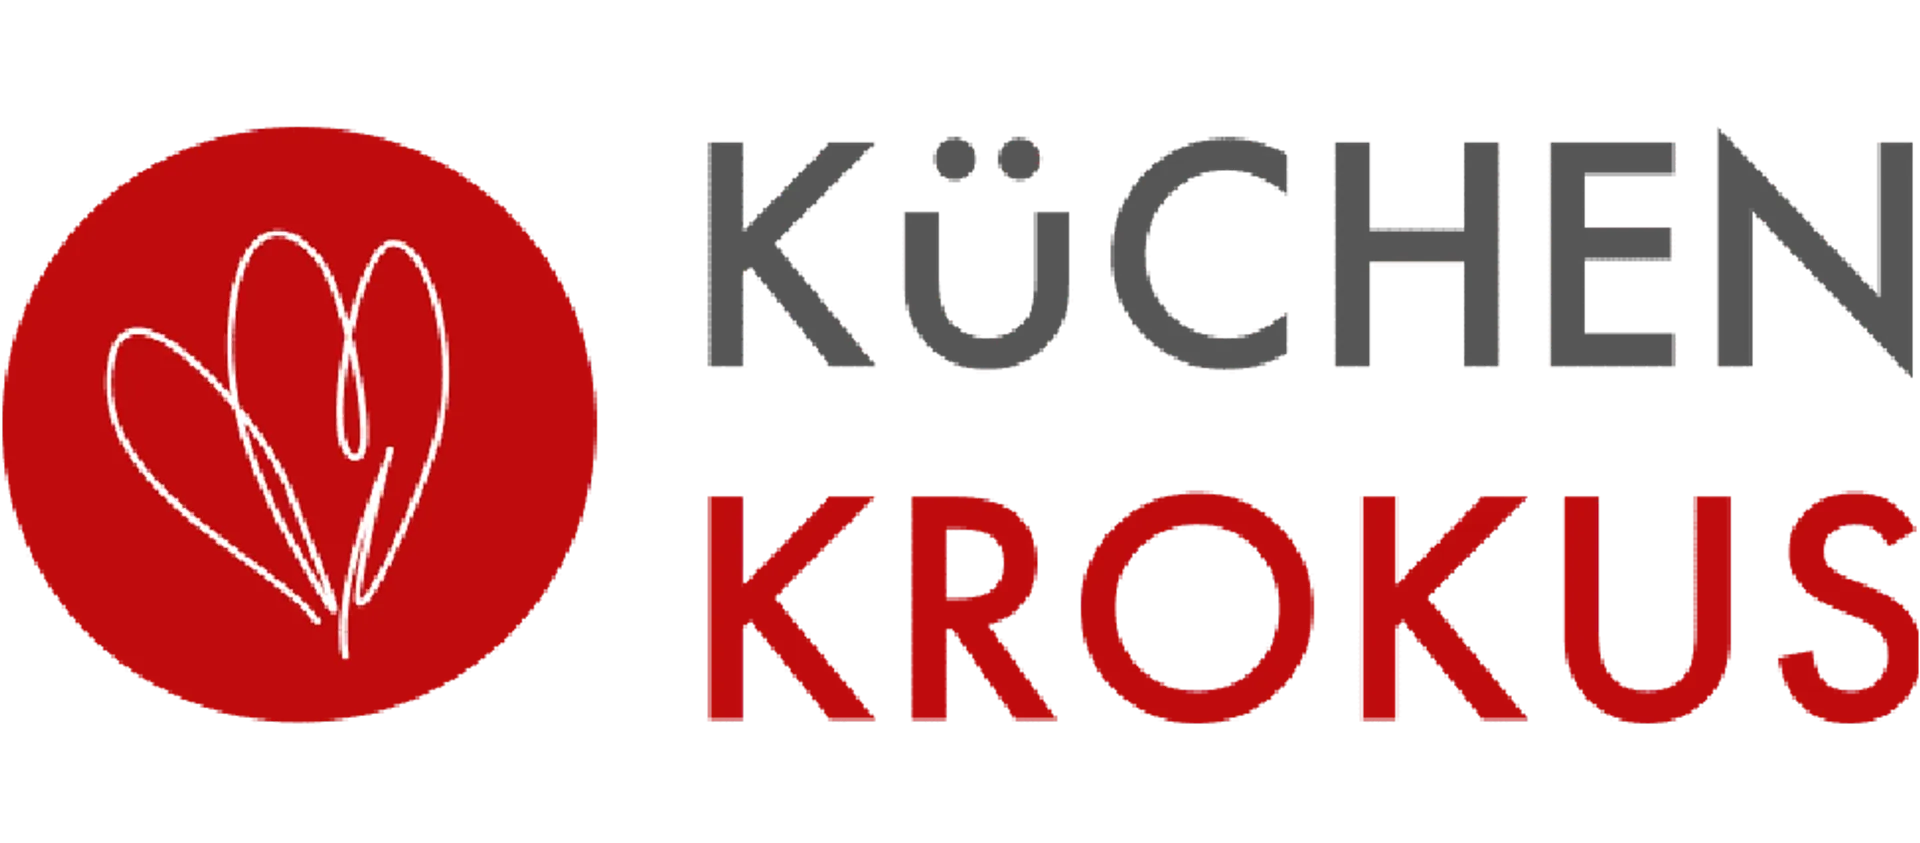 KÜCHEN KROKUS logo